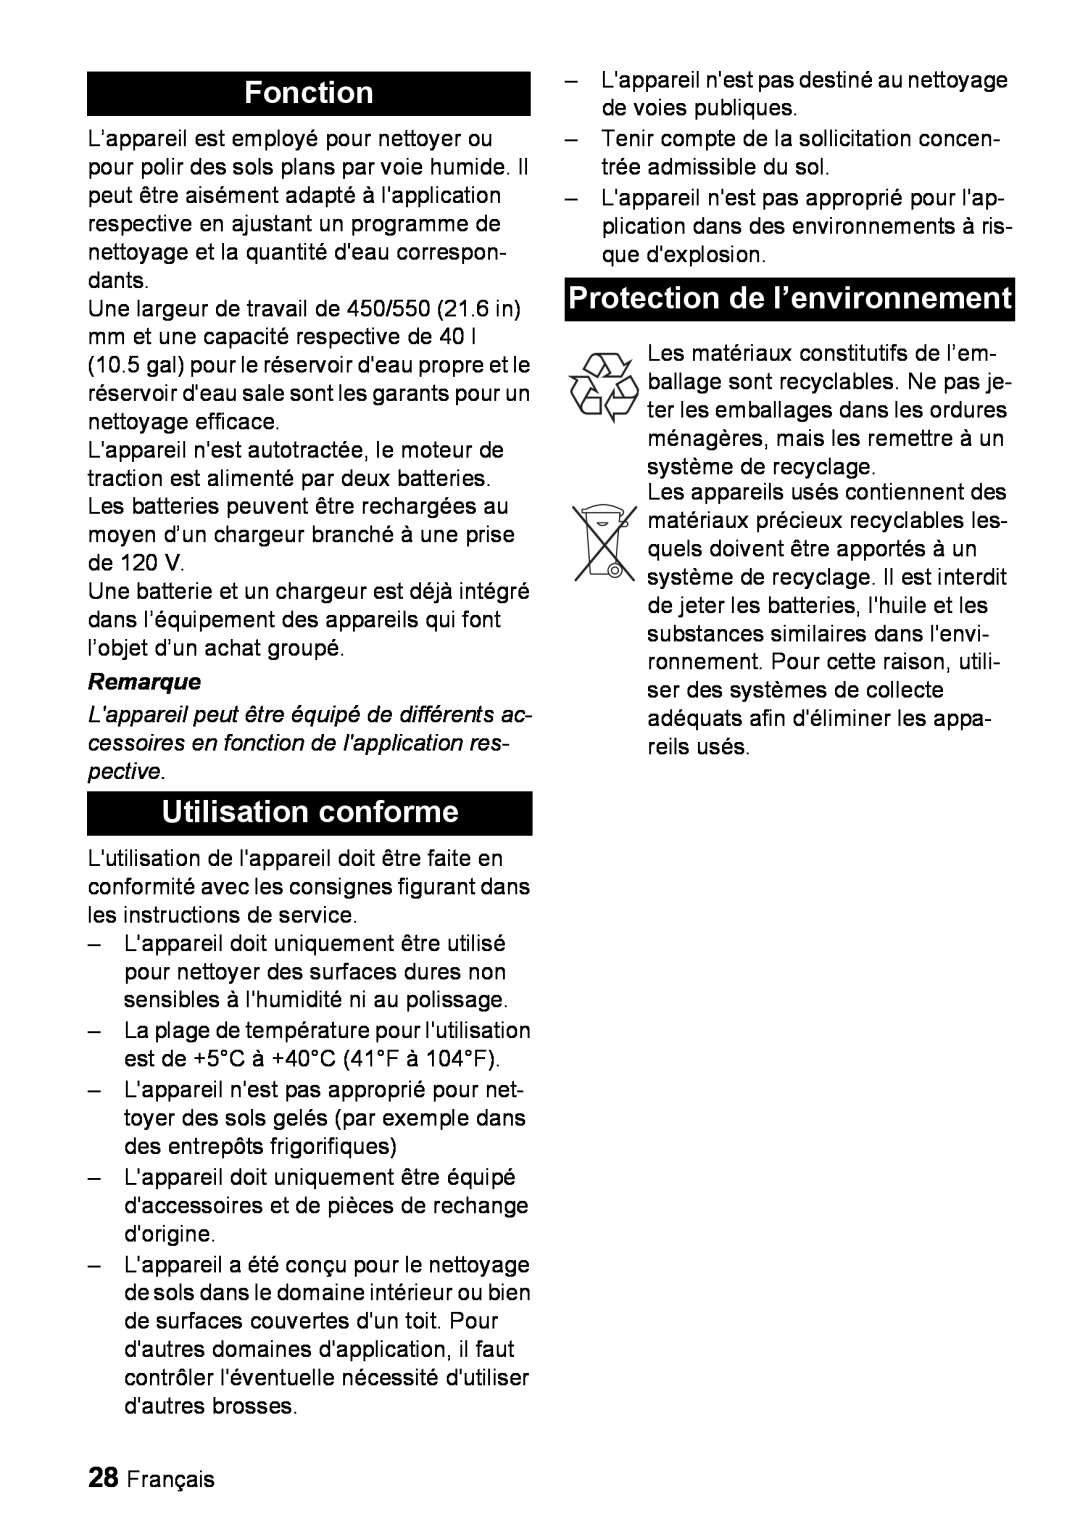 Windsor 22 SP manual Fonction, Utilisation conforme, Protection de l’environnement, Remarque 